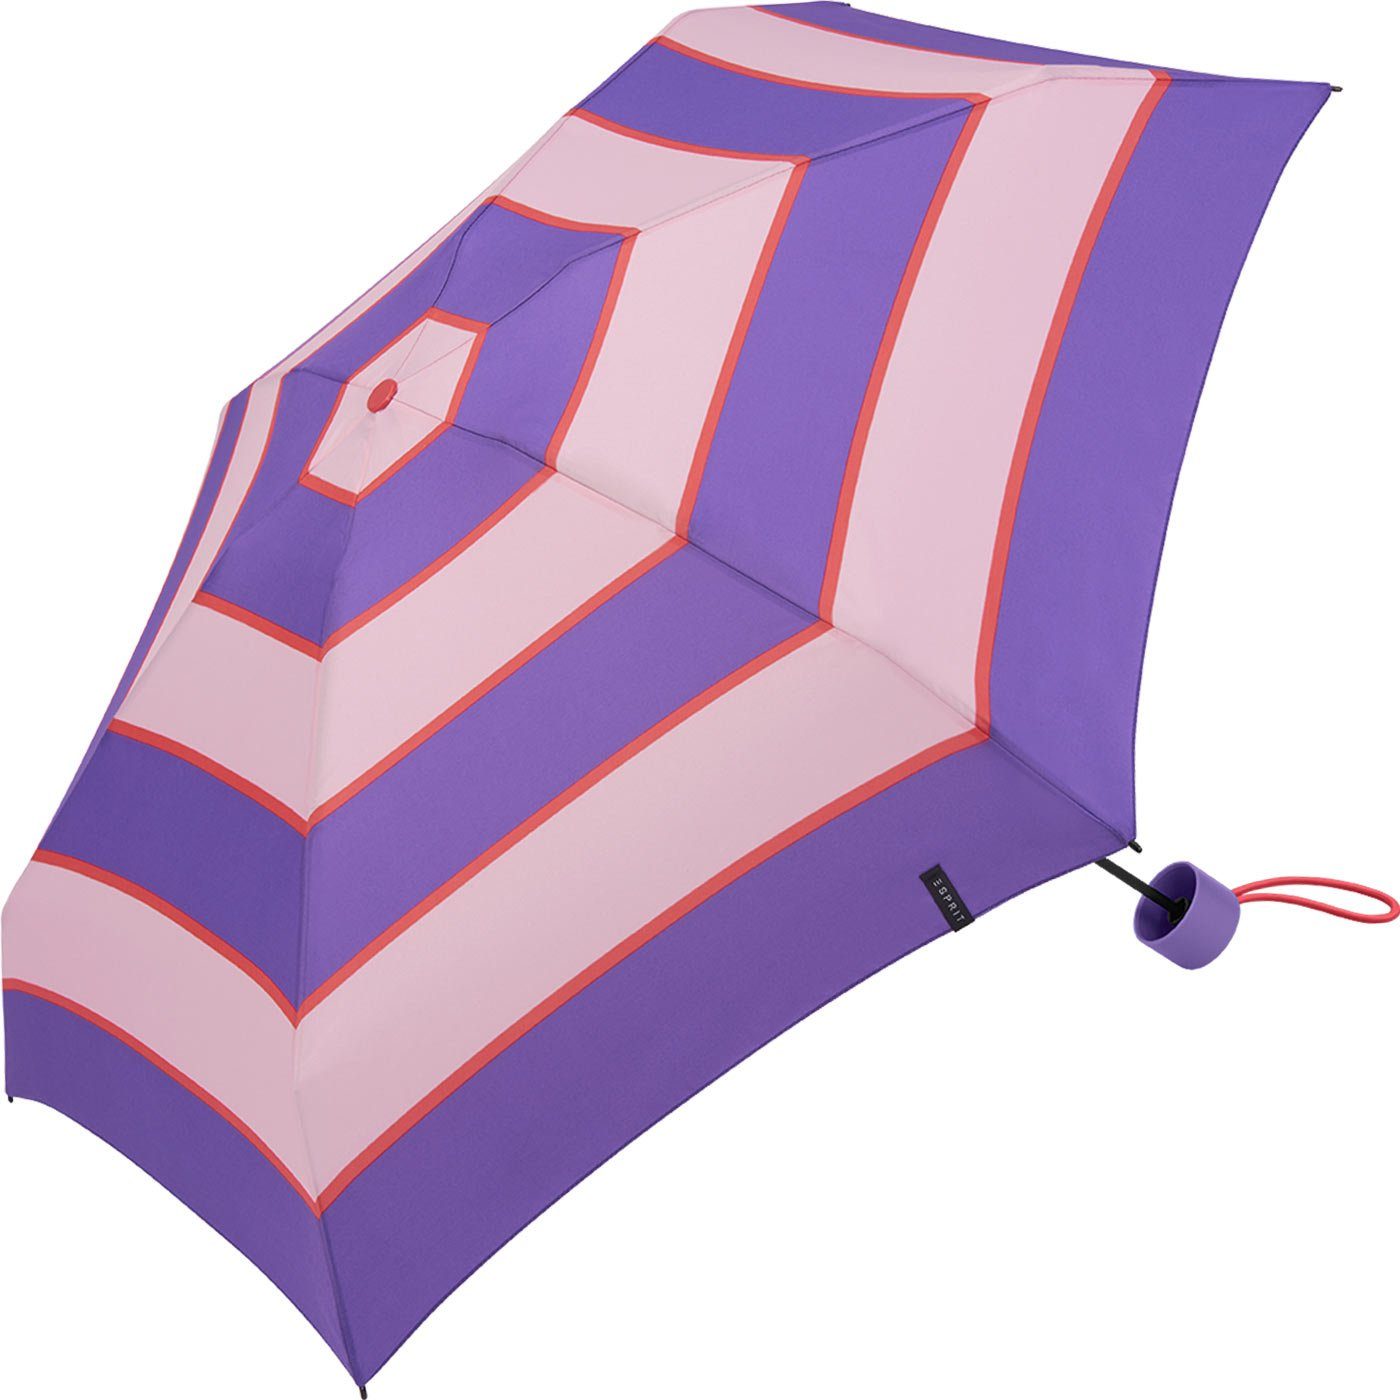 Regenschirm Mini mit lavender winzig lila-altrosa Streifen-Muster Stripe, Taschenregenschirm Petito - deep Collegiate Esprit klein,